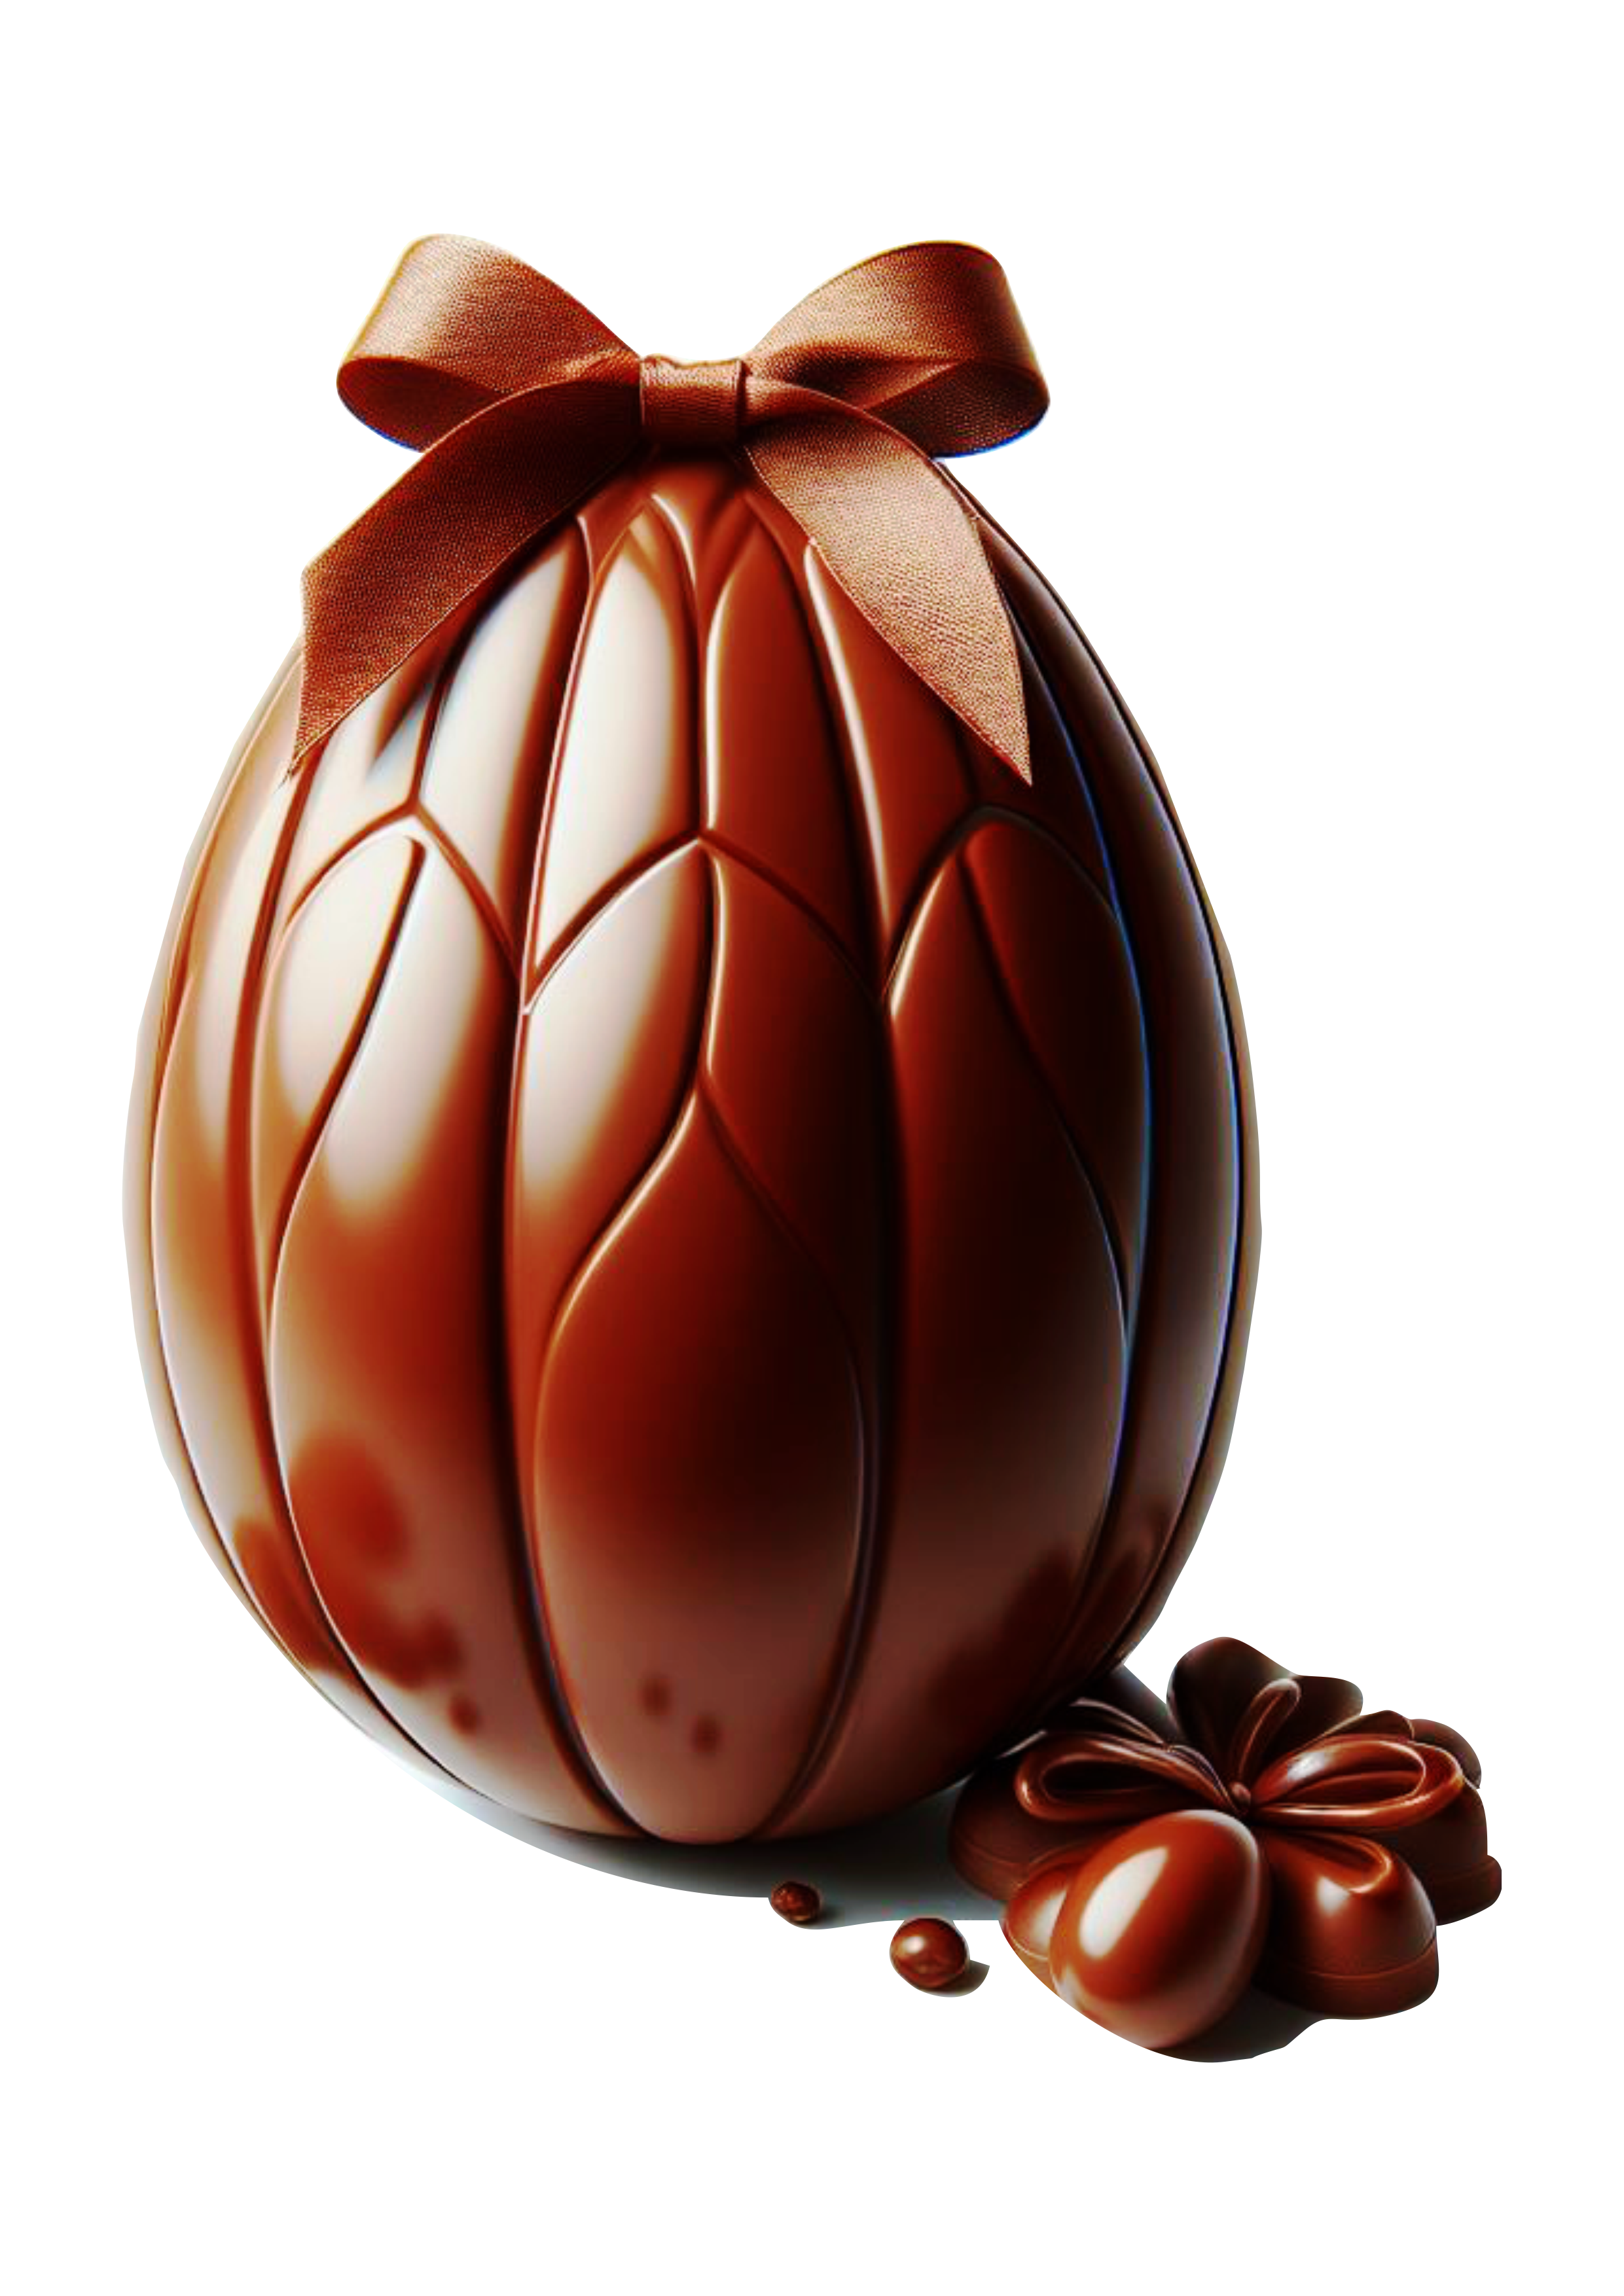 Ovo de páscoa de chocolate imagem com fundo transparente fotografia artes gráficas png